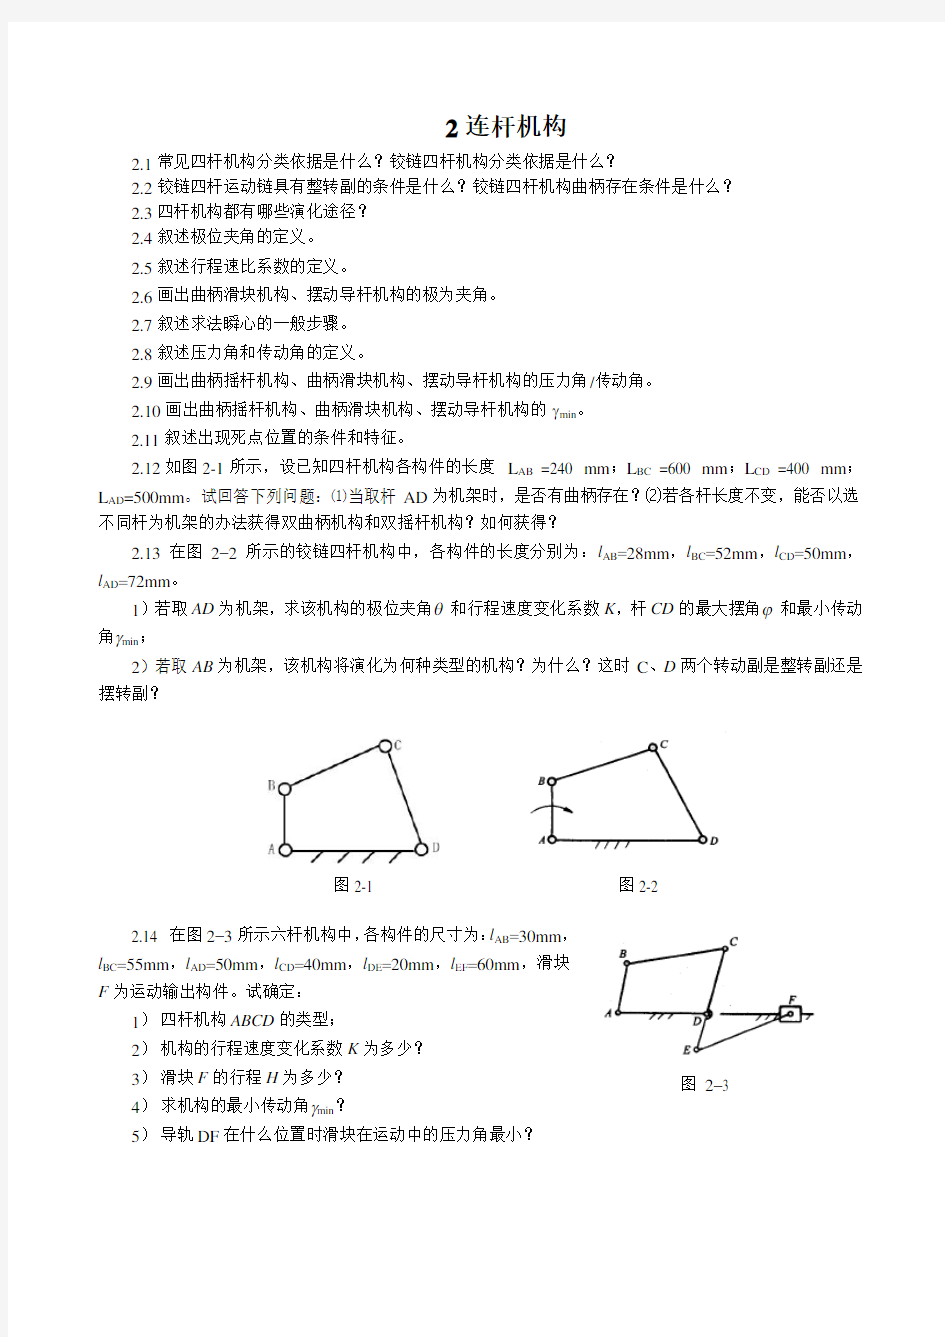 重庆大学机械原理习题集-2连杆机构